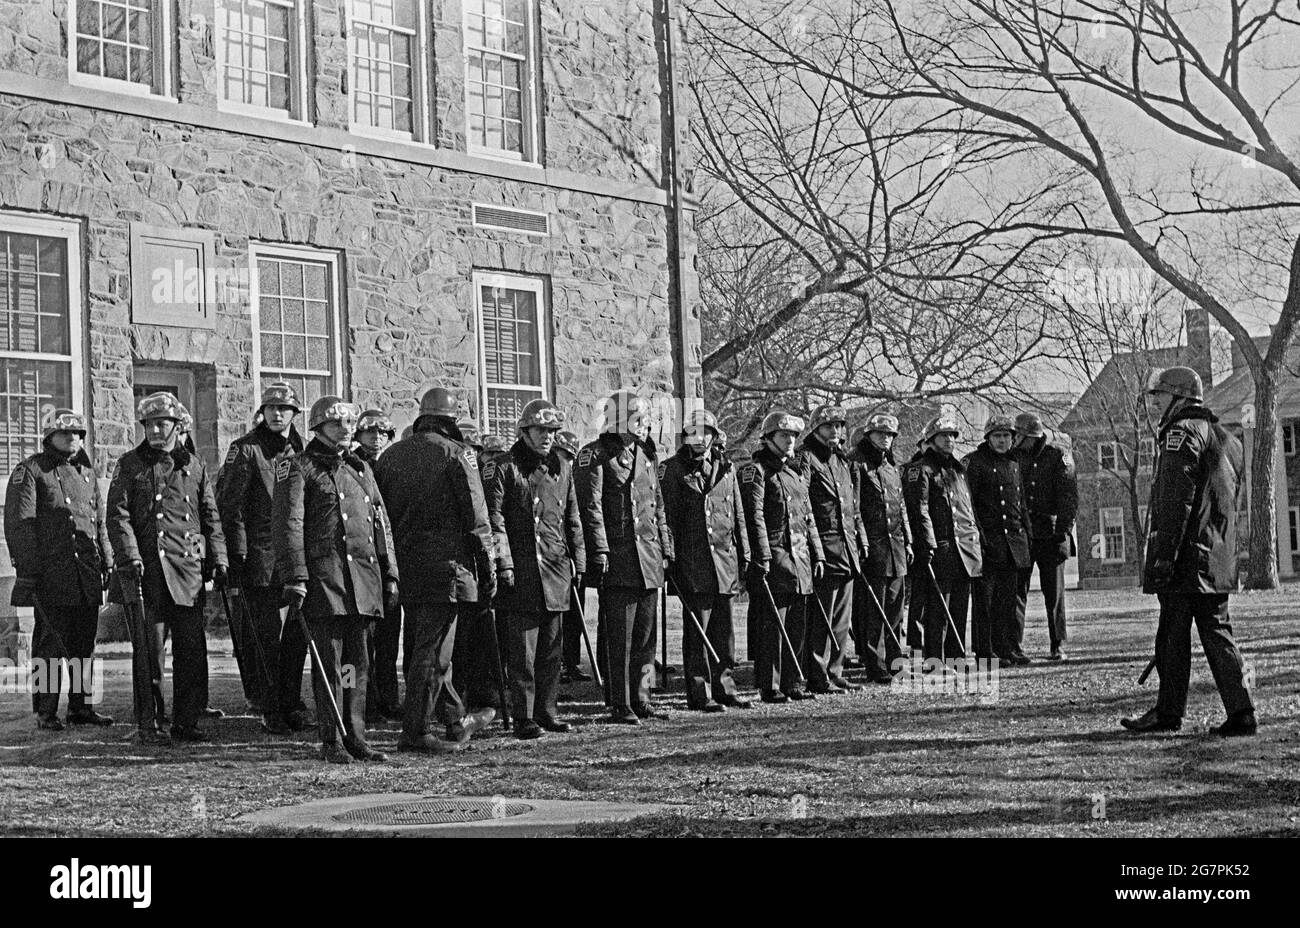 Alla fine degli anni '60 la polizia di Stato della Pennsylvania occupò il campus della Cheyney state College, un'università prevalentemente afroamericana. Foto Stock